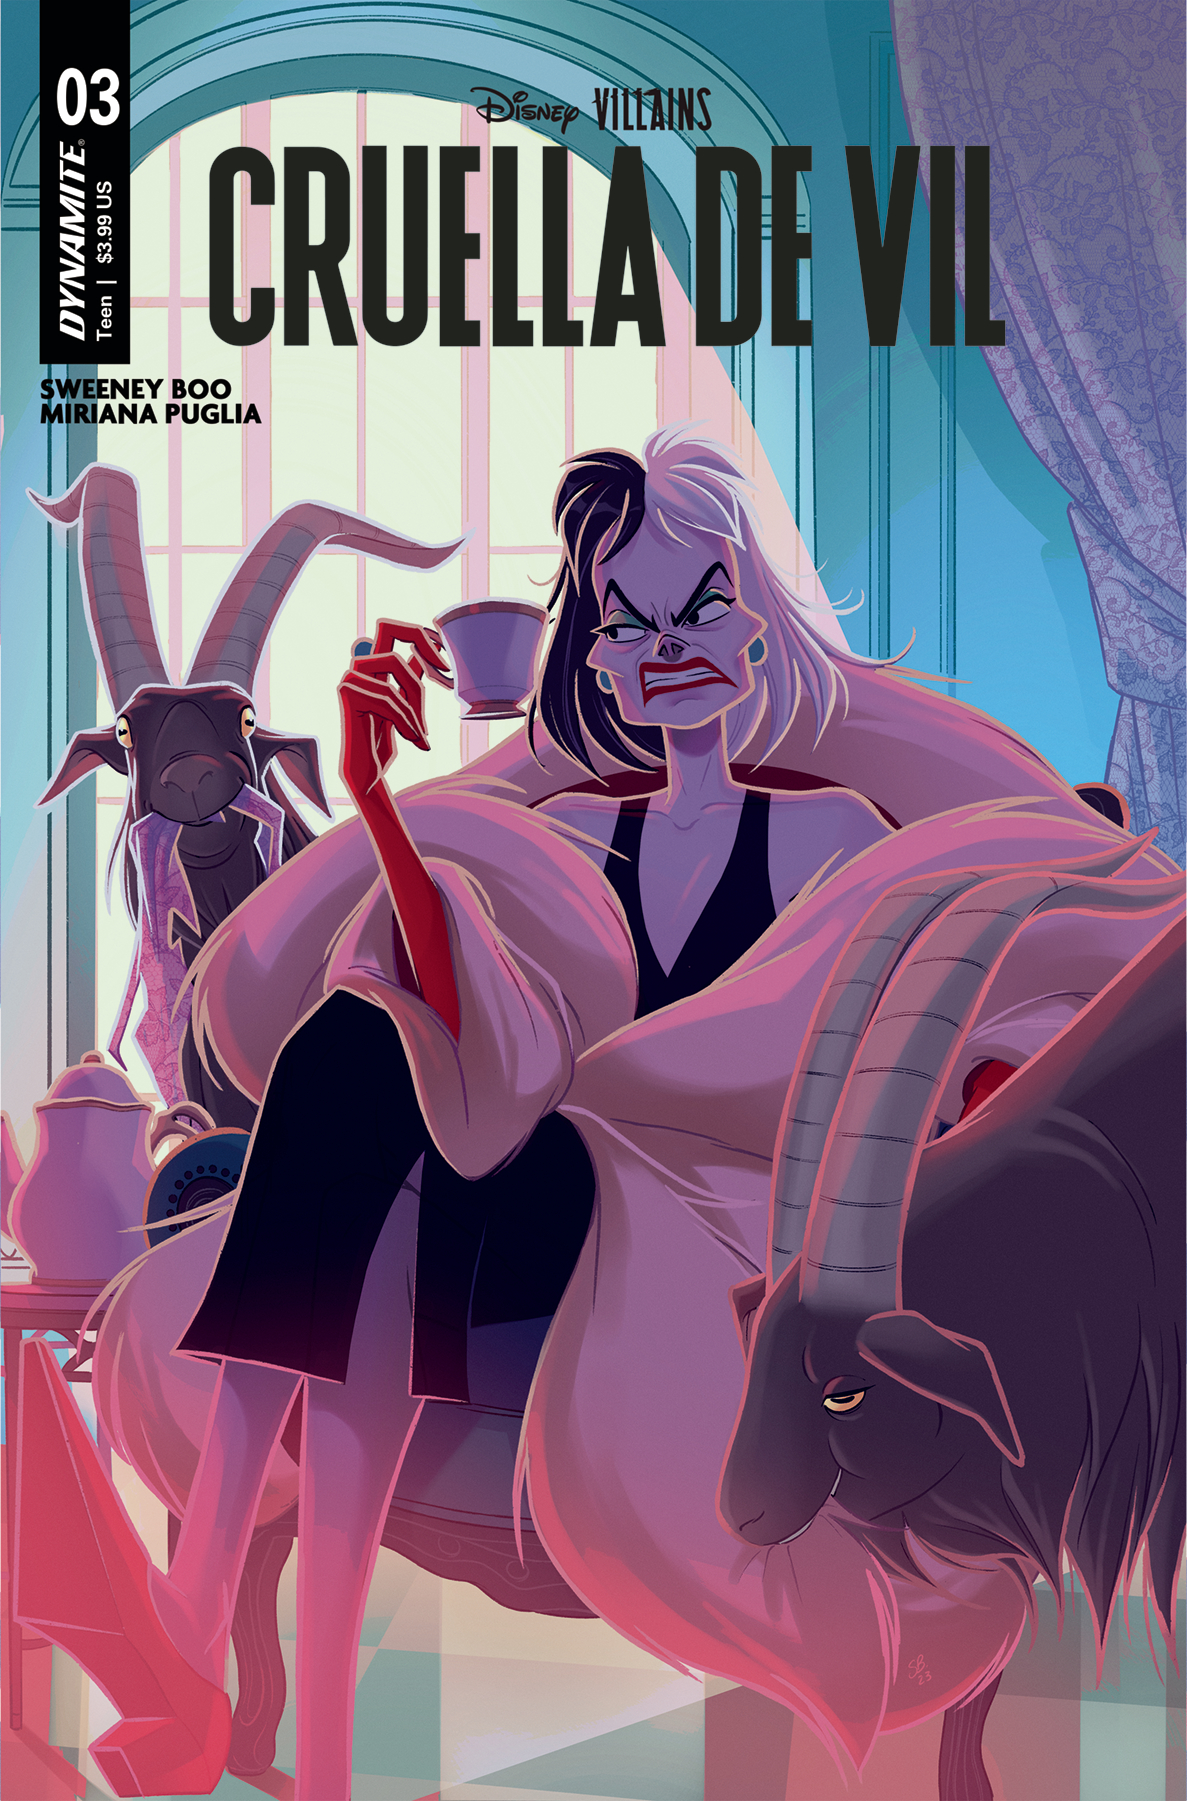 Disney Villains Cruella De Vil #3 Cover A Boo